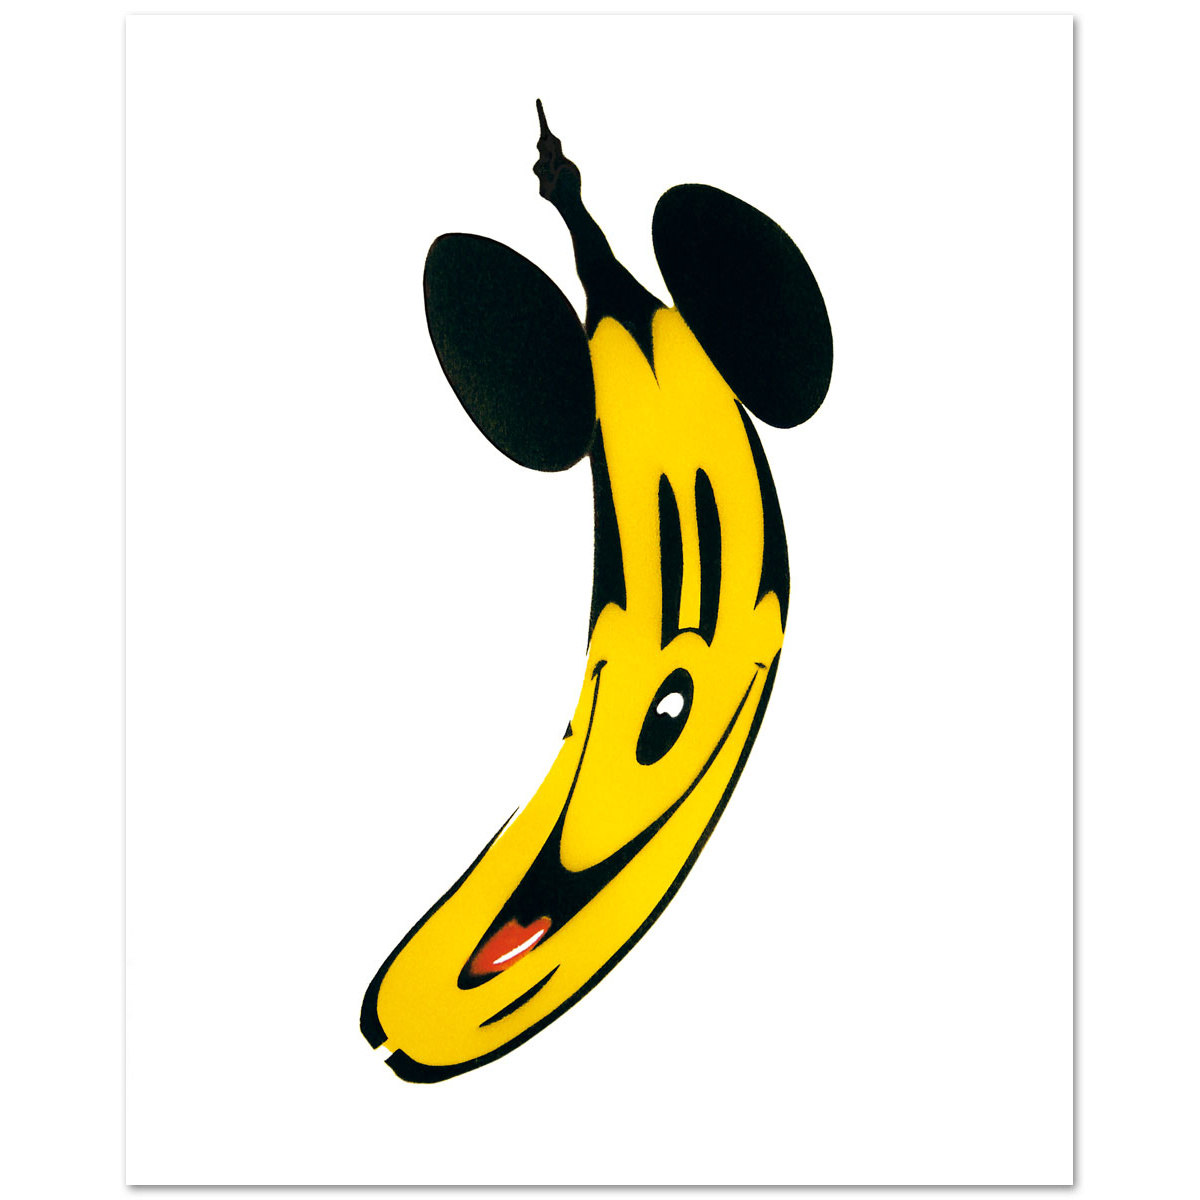 Maus-Banane von Thomas Baumgärtel